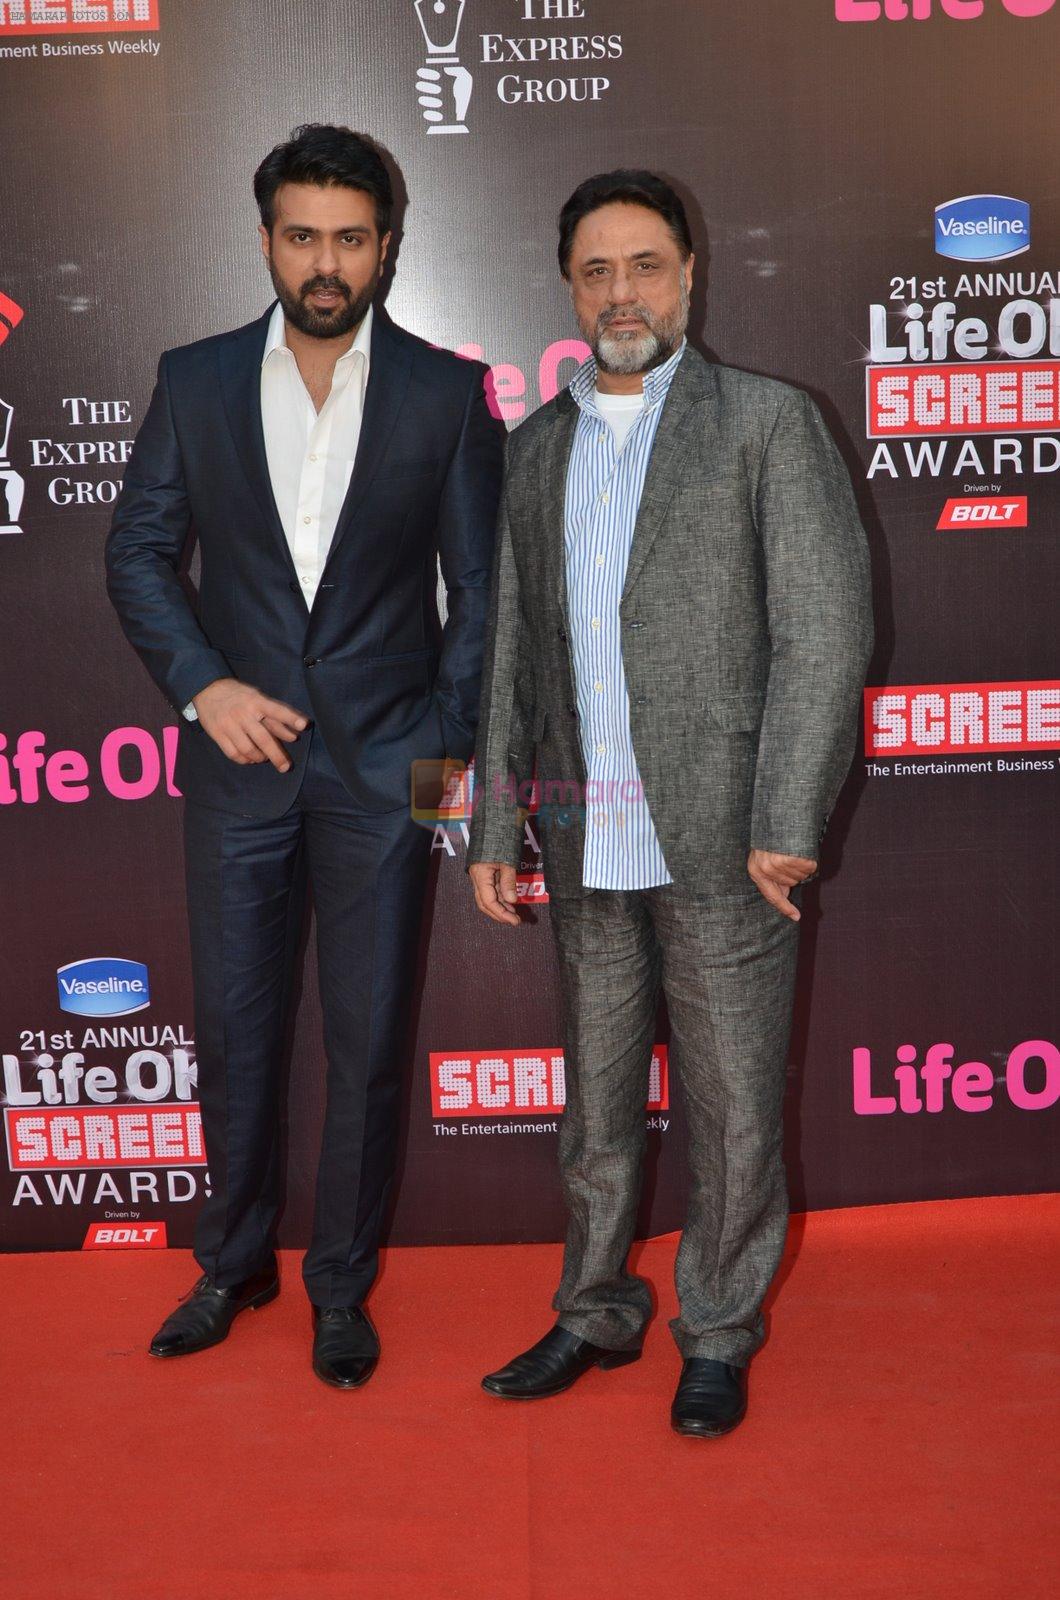 Harman Baweja, Harry Baweja at Life Ok Screen Awards red carpet in Mumbai on 14th Jan 2015